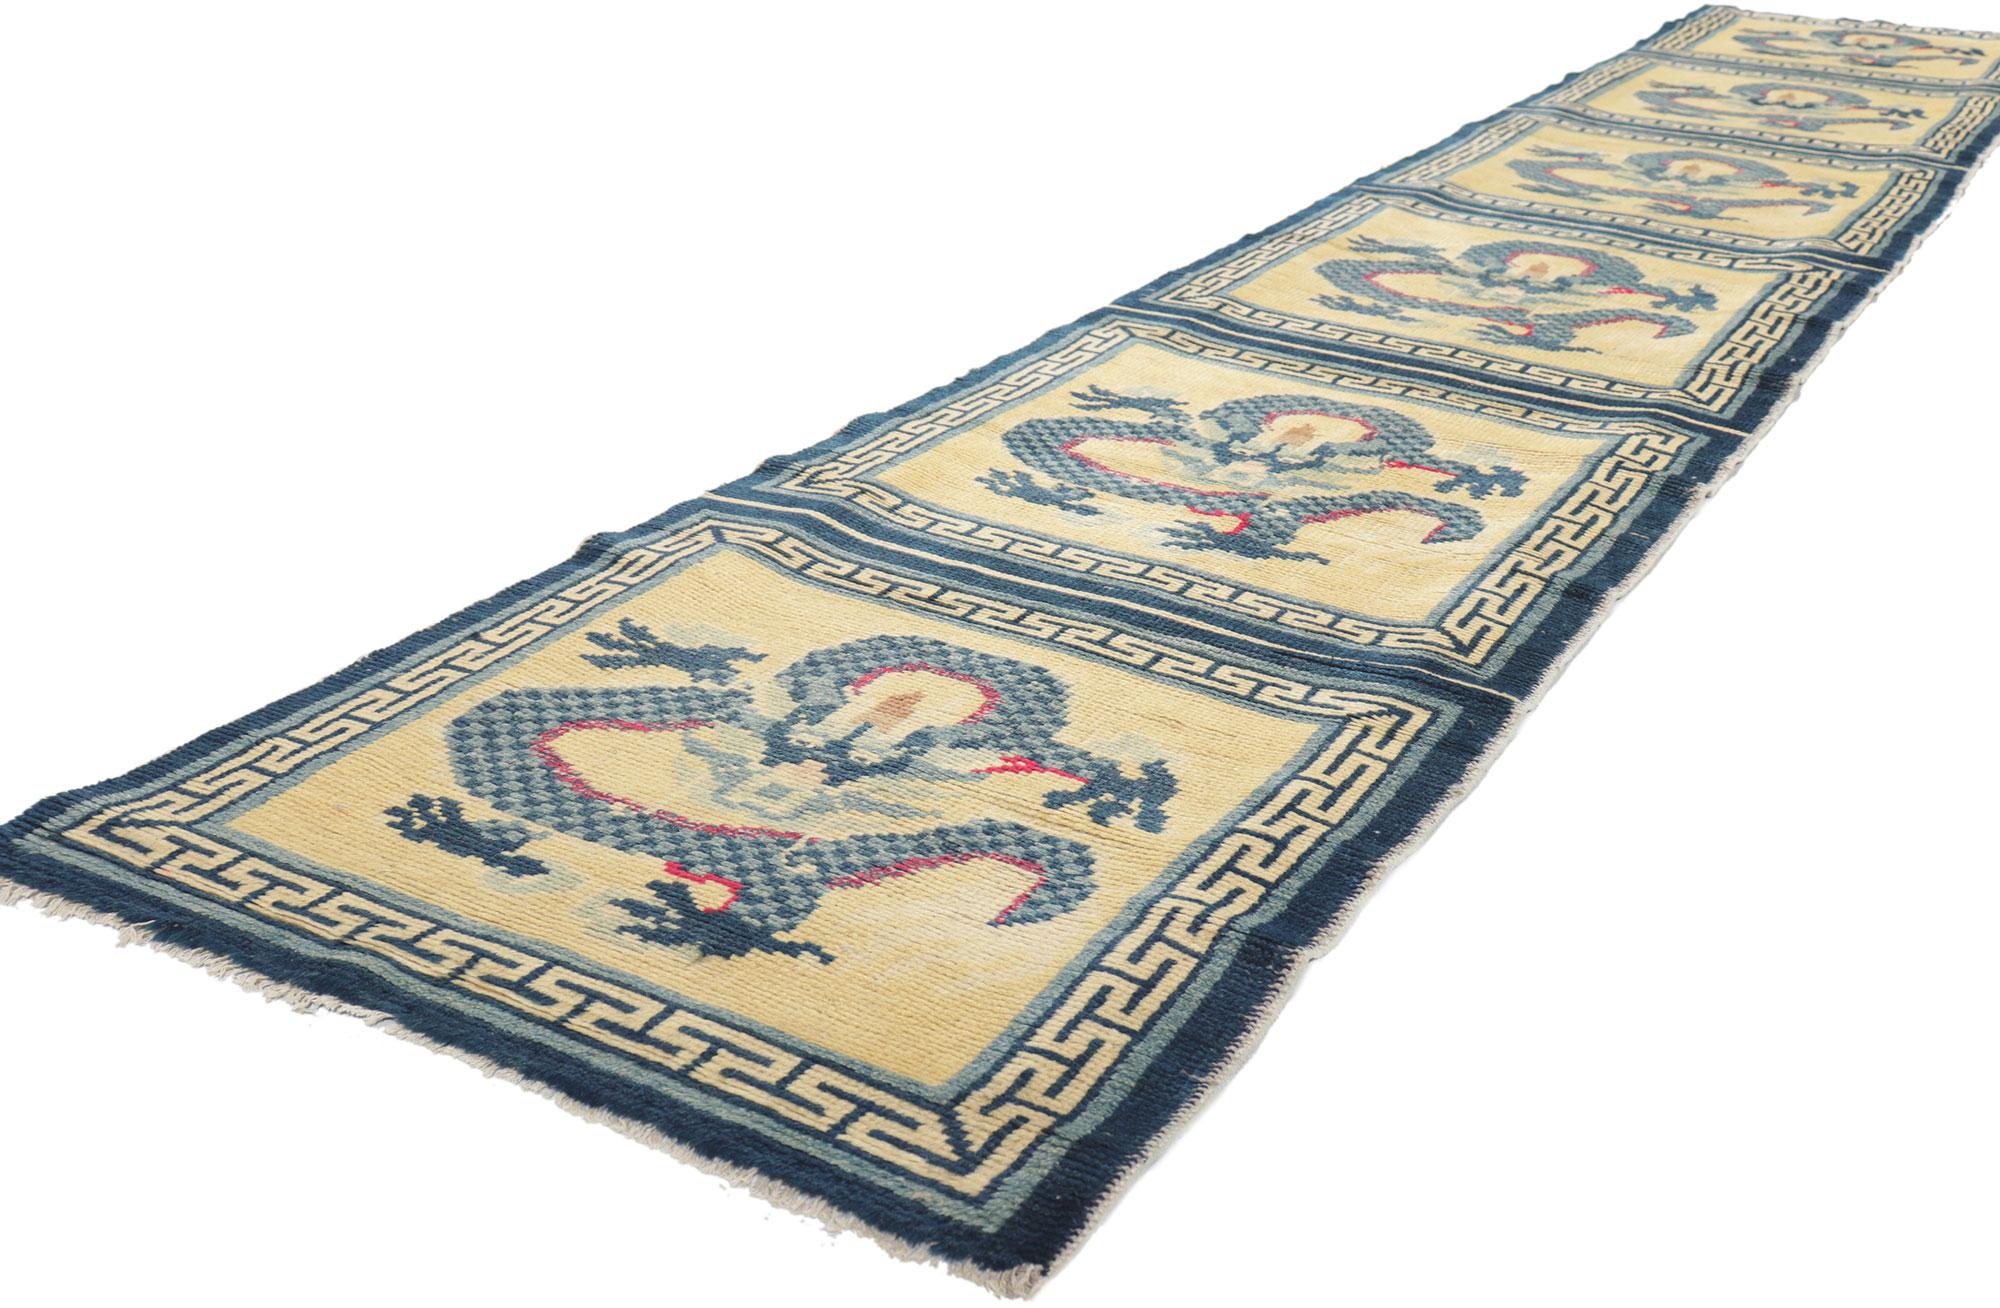 78455 Tapis de méditation chinois antique Ningxia Bench runner, 02'01 x 13'01. Émanant d'éléments mythiques avec des détails et une texture incroyables, ce chemin de table en laine nouée à la main de la Chine antique de Ningxia est une vision